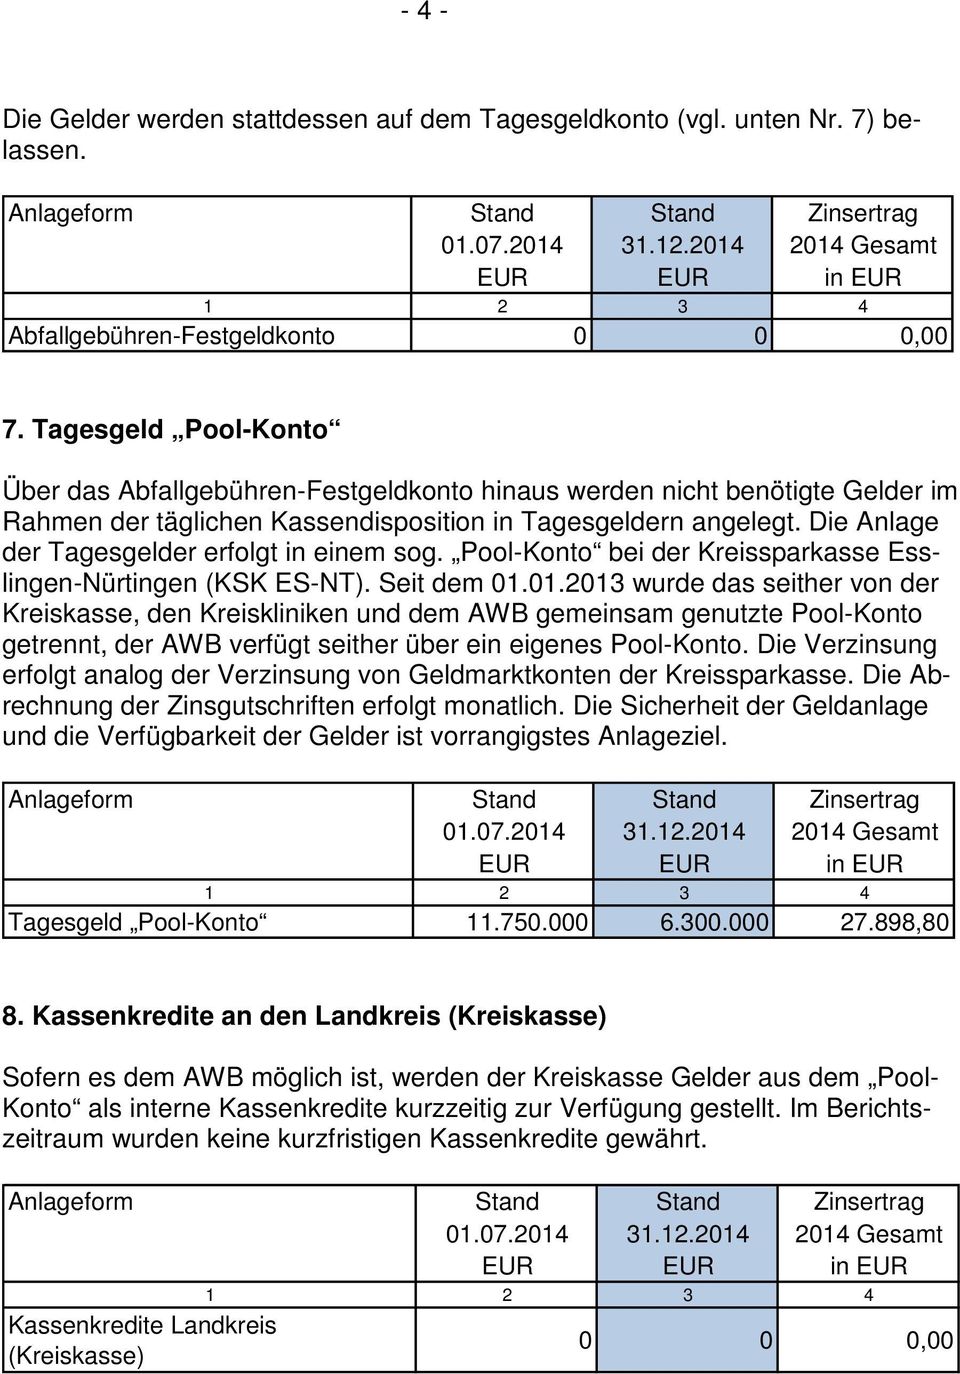 Die Anlage der Tagesgelder erfolgt in einem sog. Pool-Konto bei der Kreissparkasse Esslingen-Nürtingen (KSK ES-NT). Seit dem 01.